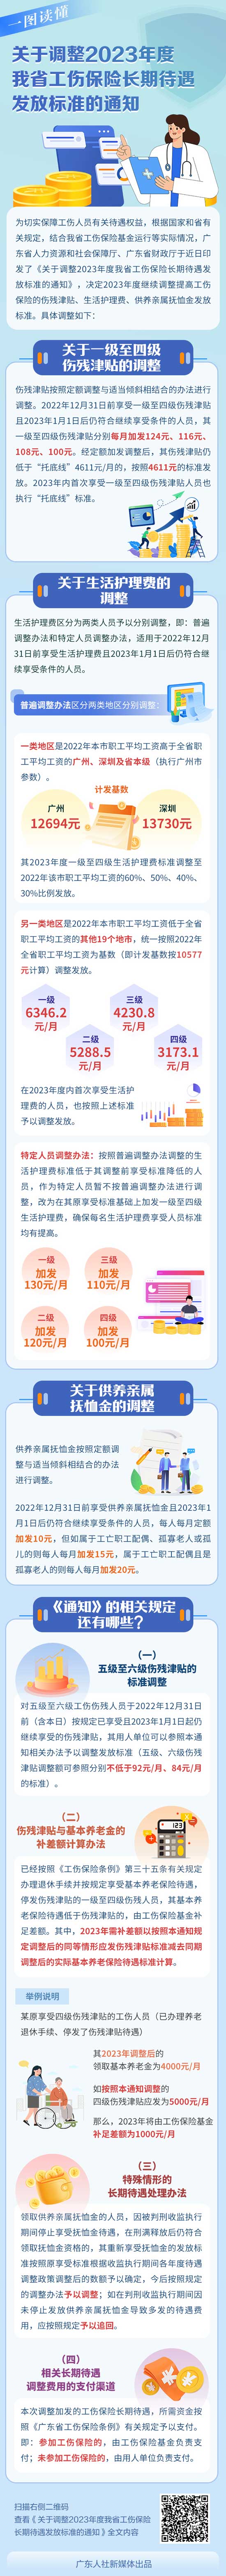 广东省财政厅关于调整2023年度我省工伤保险长期待遇发放标准的通知